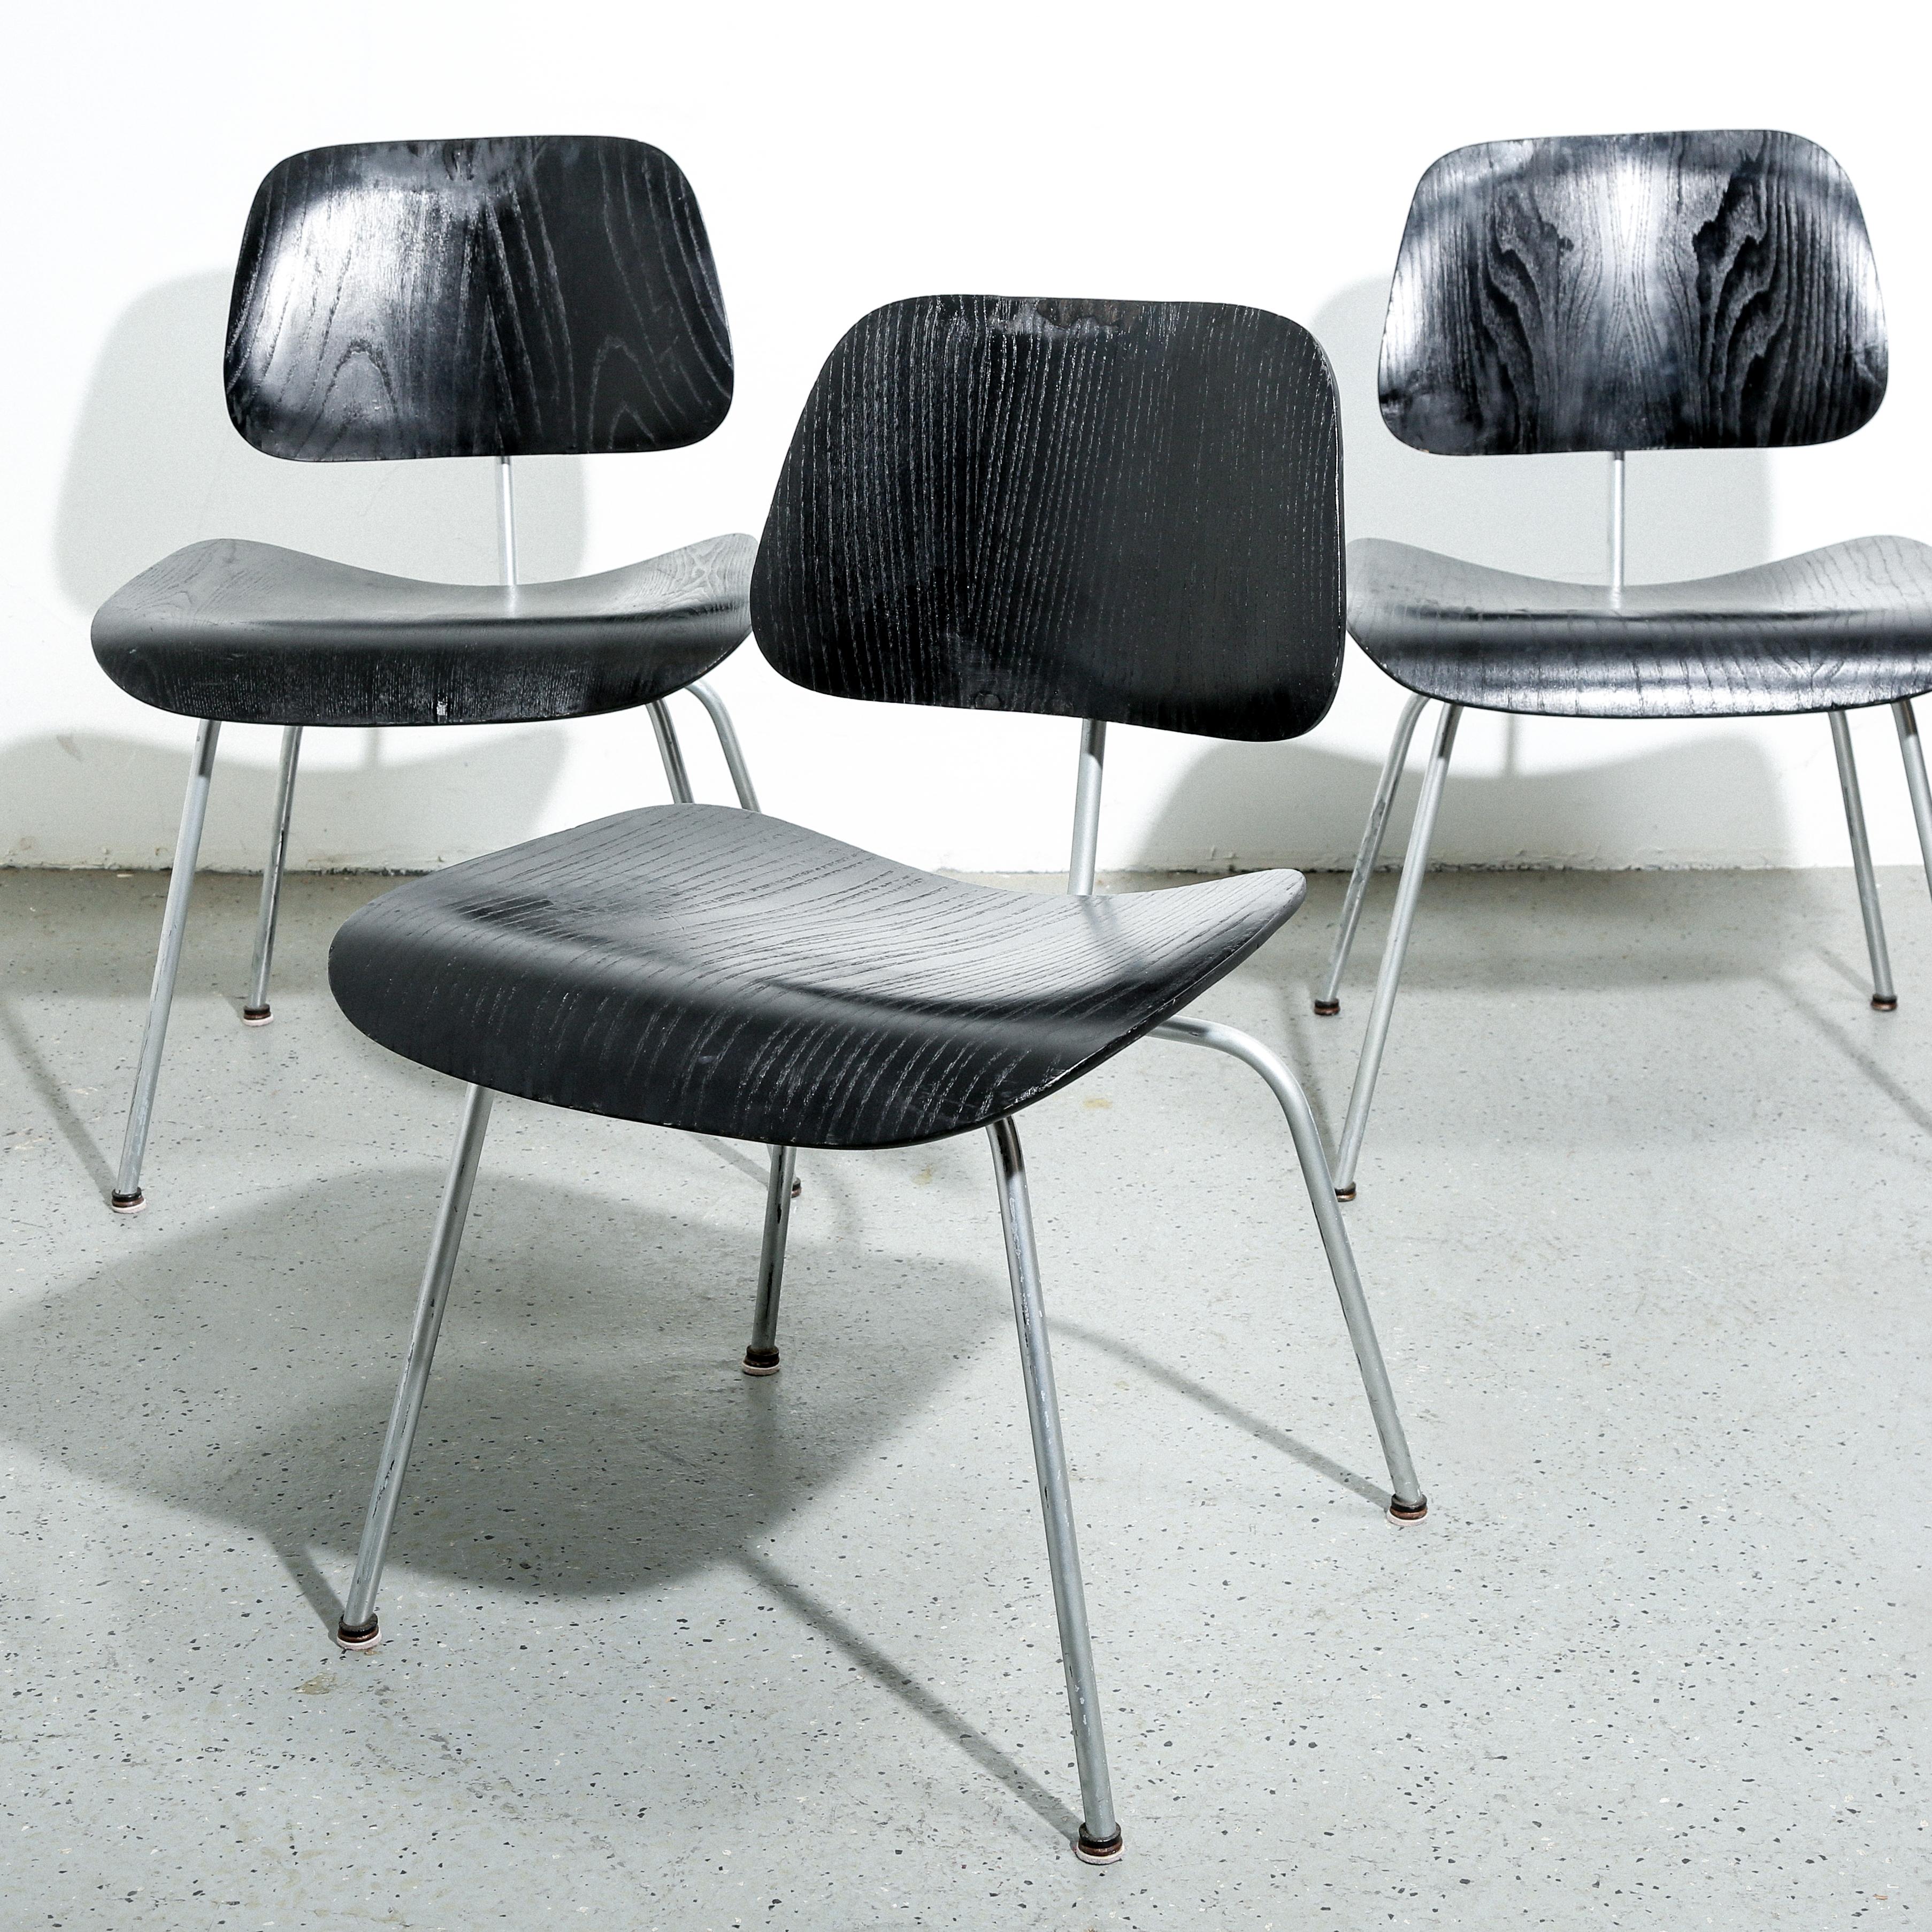 La chaise Eames DCM (Dining Chair Metal) est une pièce de mobilier intemporelle qui incarne le mariage de la forme et de la fonction. Créée par le légendaire duo de designers Charles et Ray Eames, la chaise DCM a été présentée pour la première fois